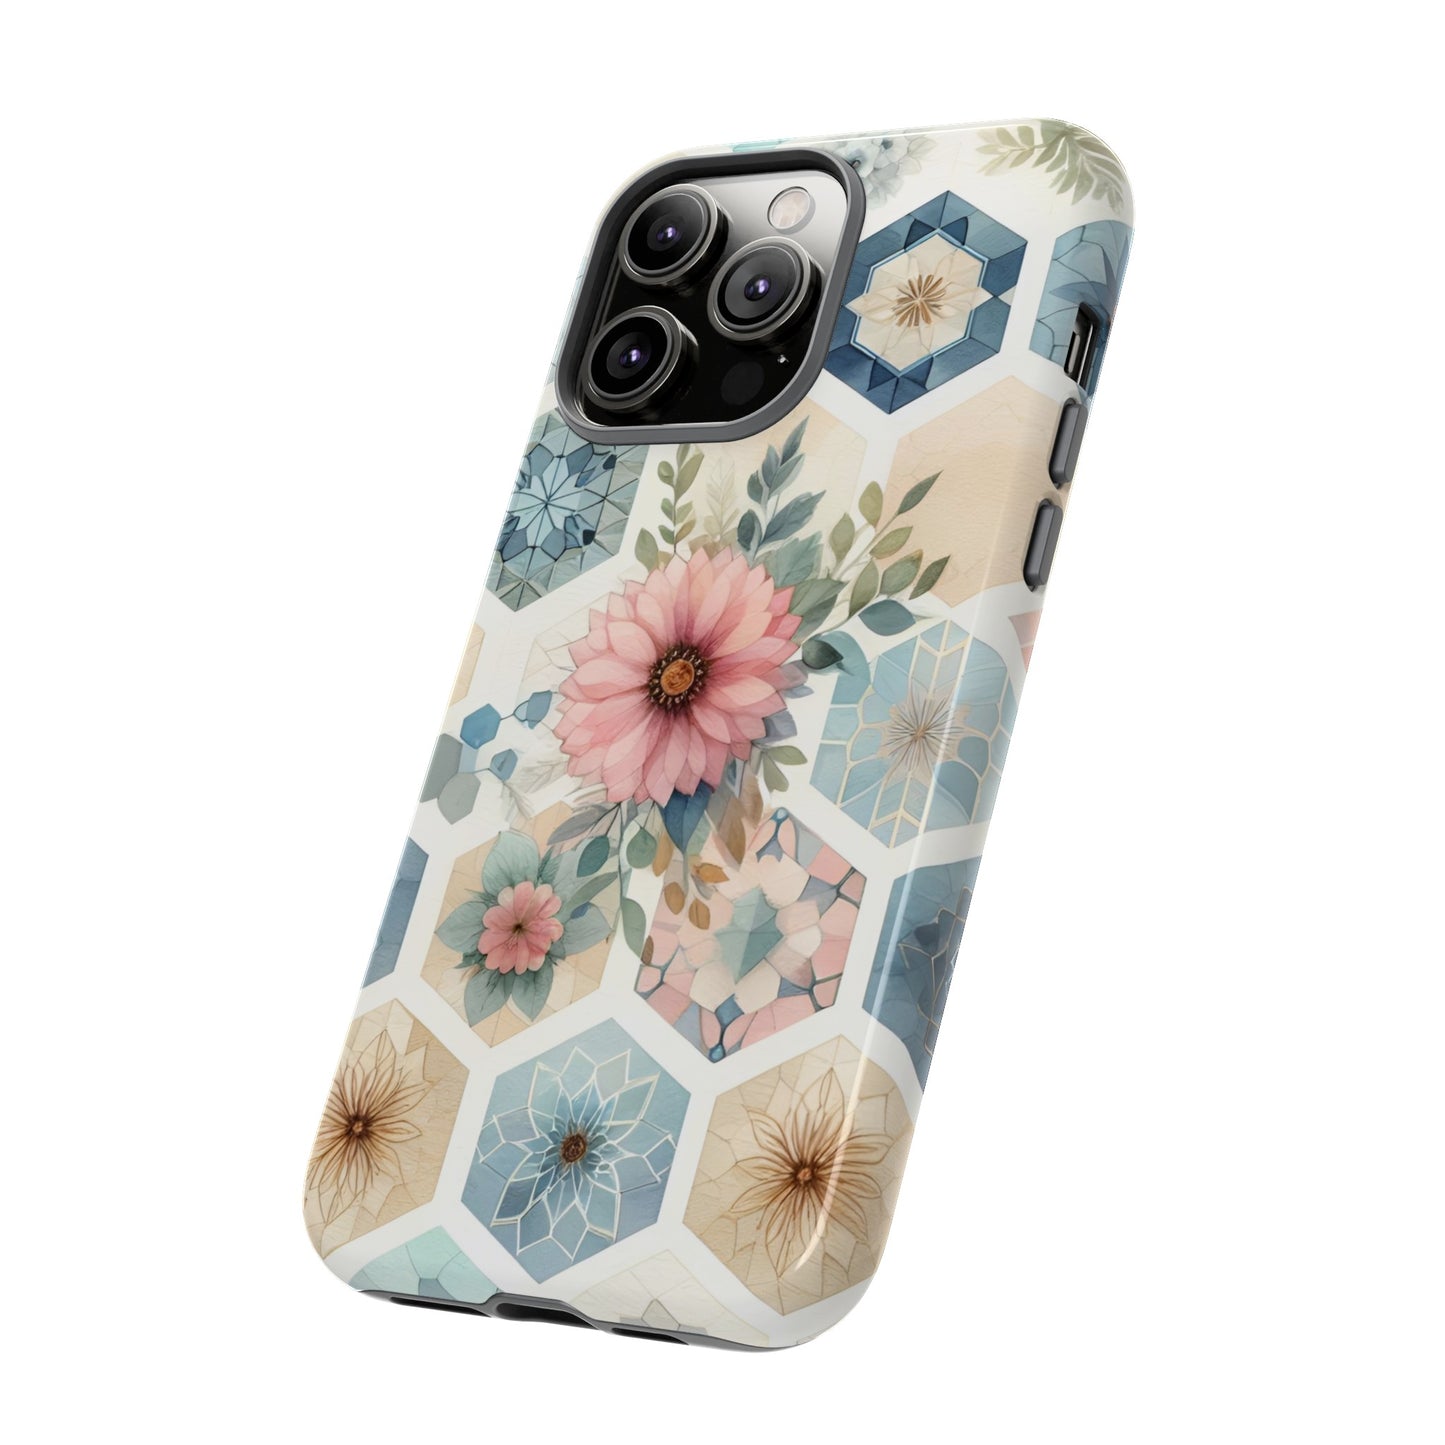 Watercolor Hexagon IPhone Cases 11 - 15